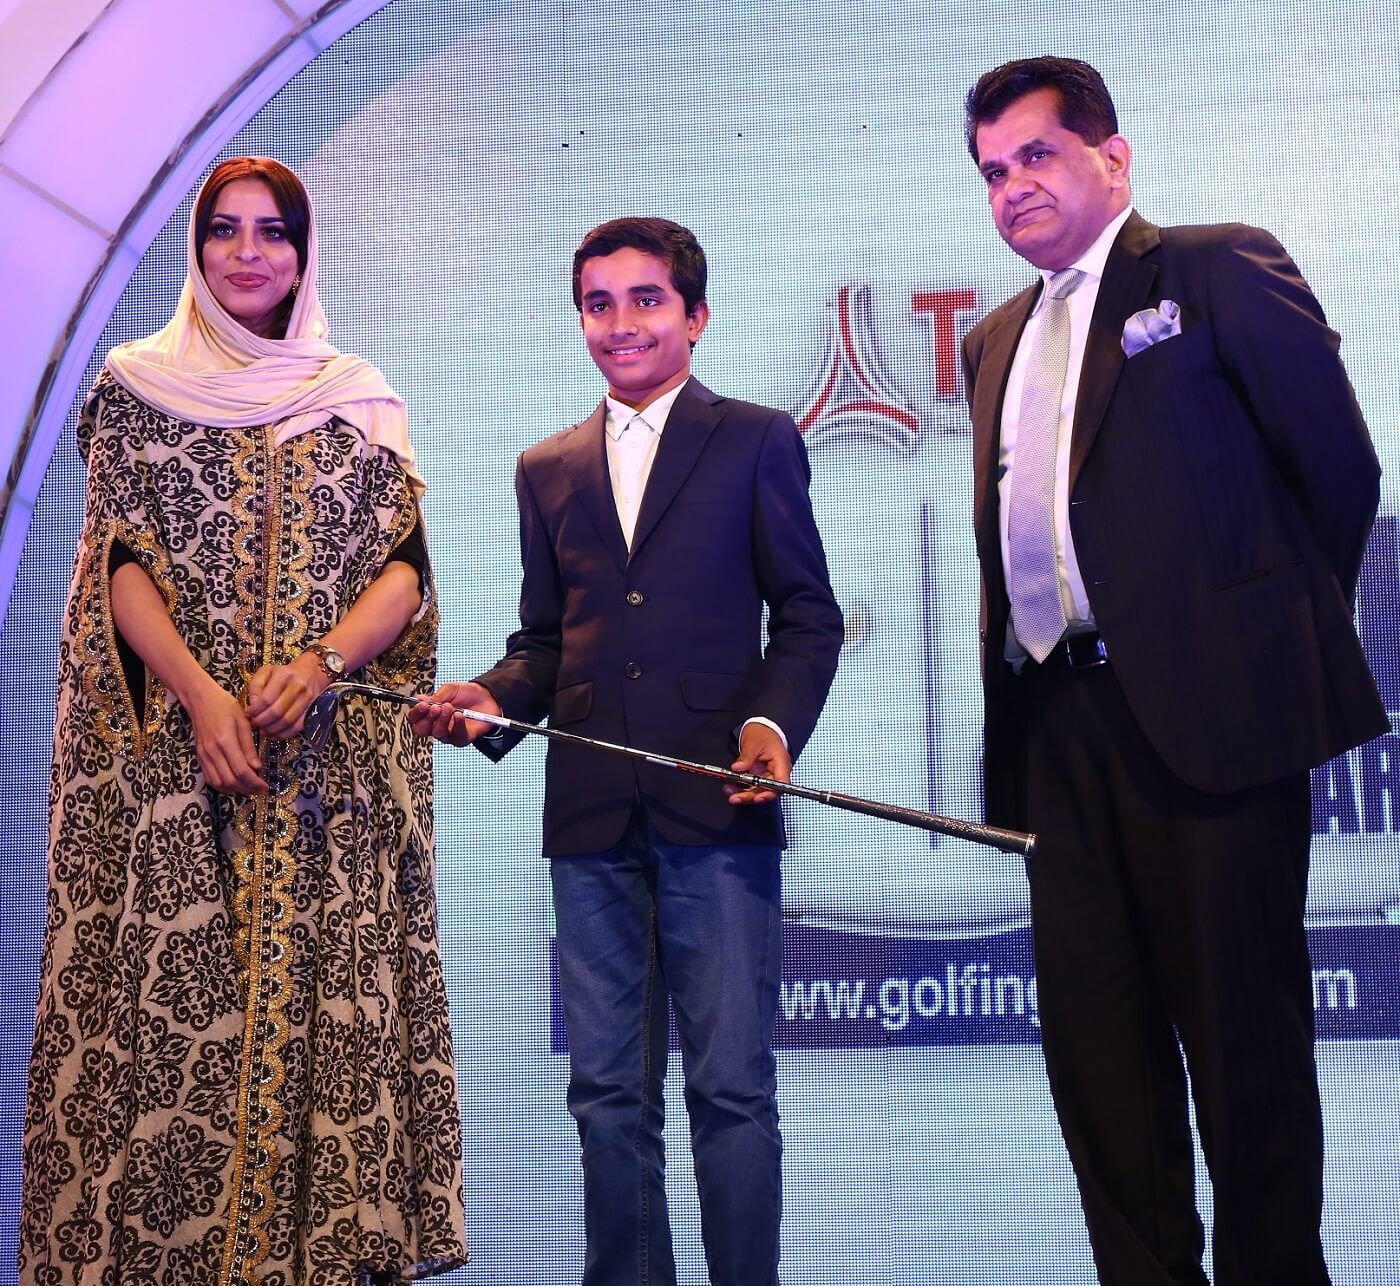 Jumeirah Golf Estates presents the Indian Golf Awards, "Young Achievers” Award.